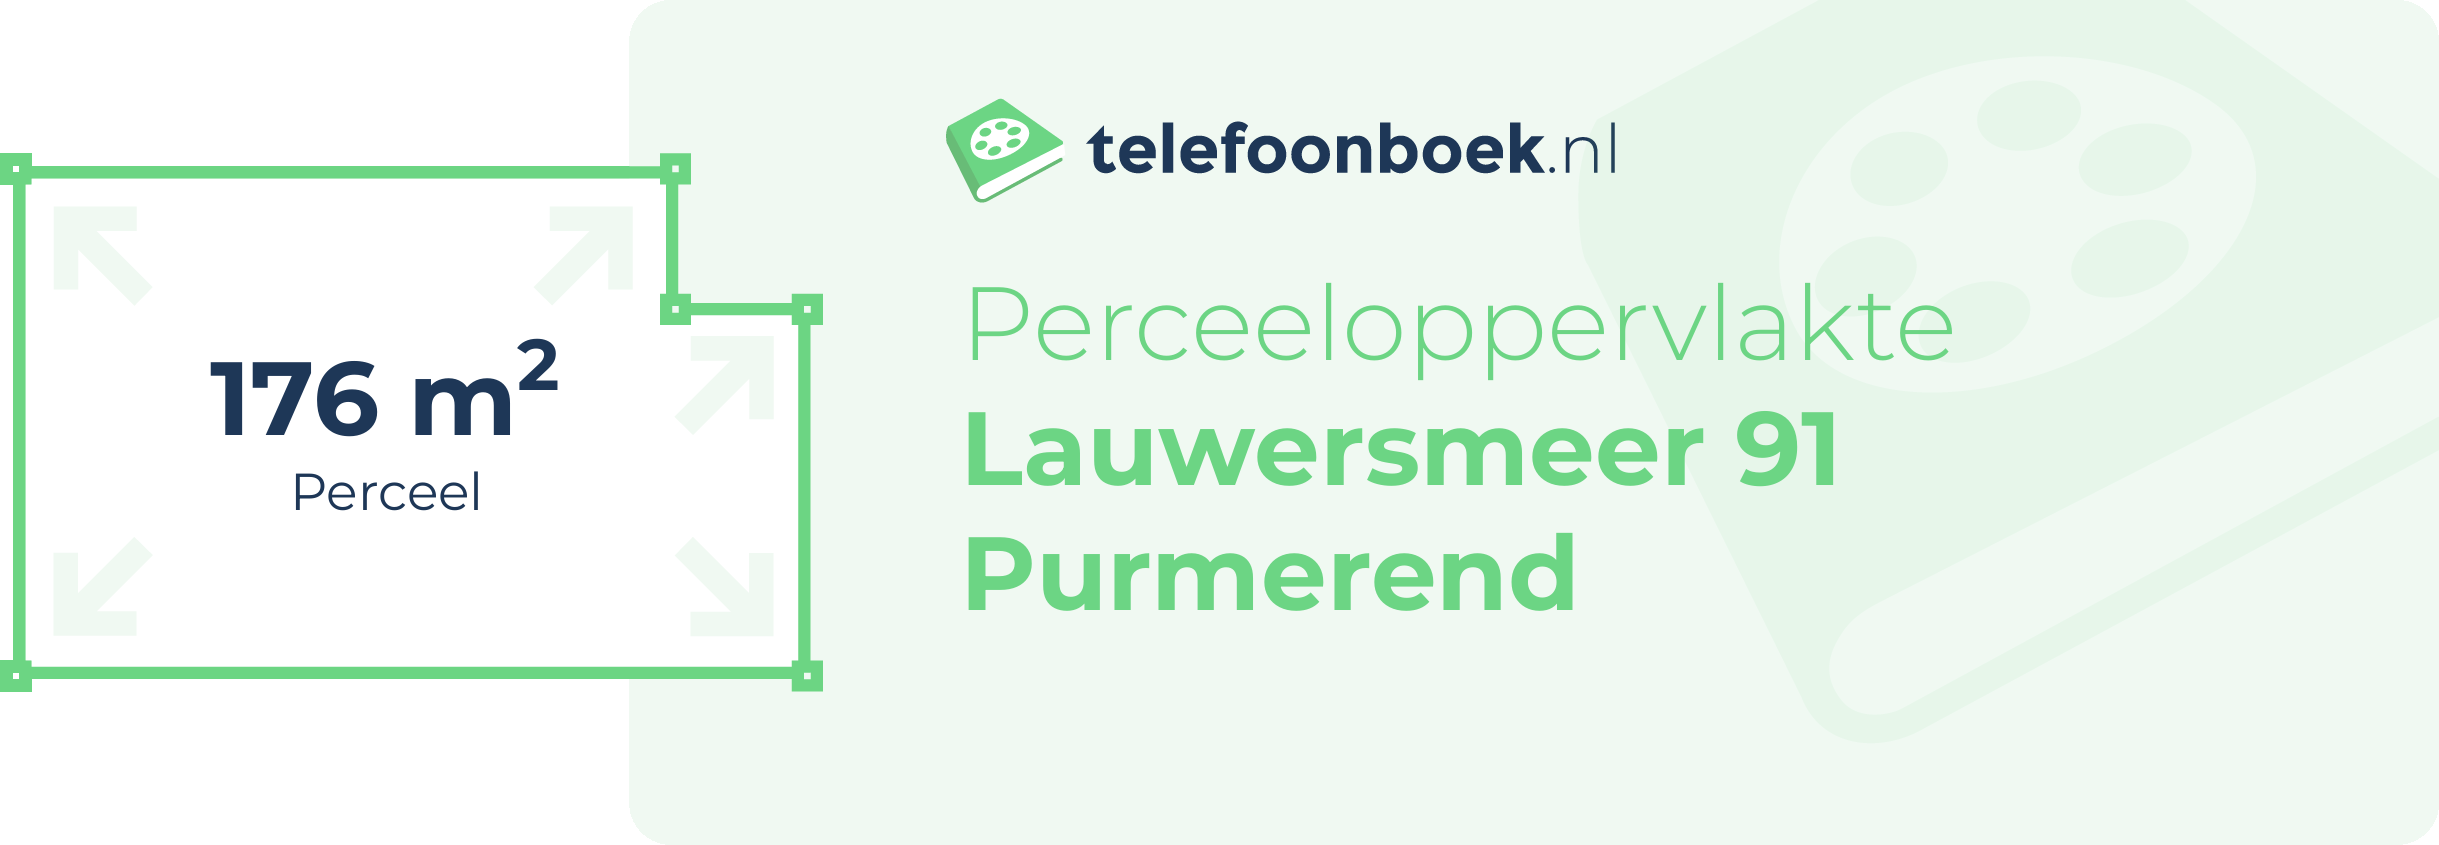 Perceeloppervlakte Lauwersmeer 91 Purmerend